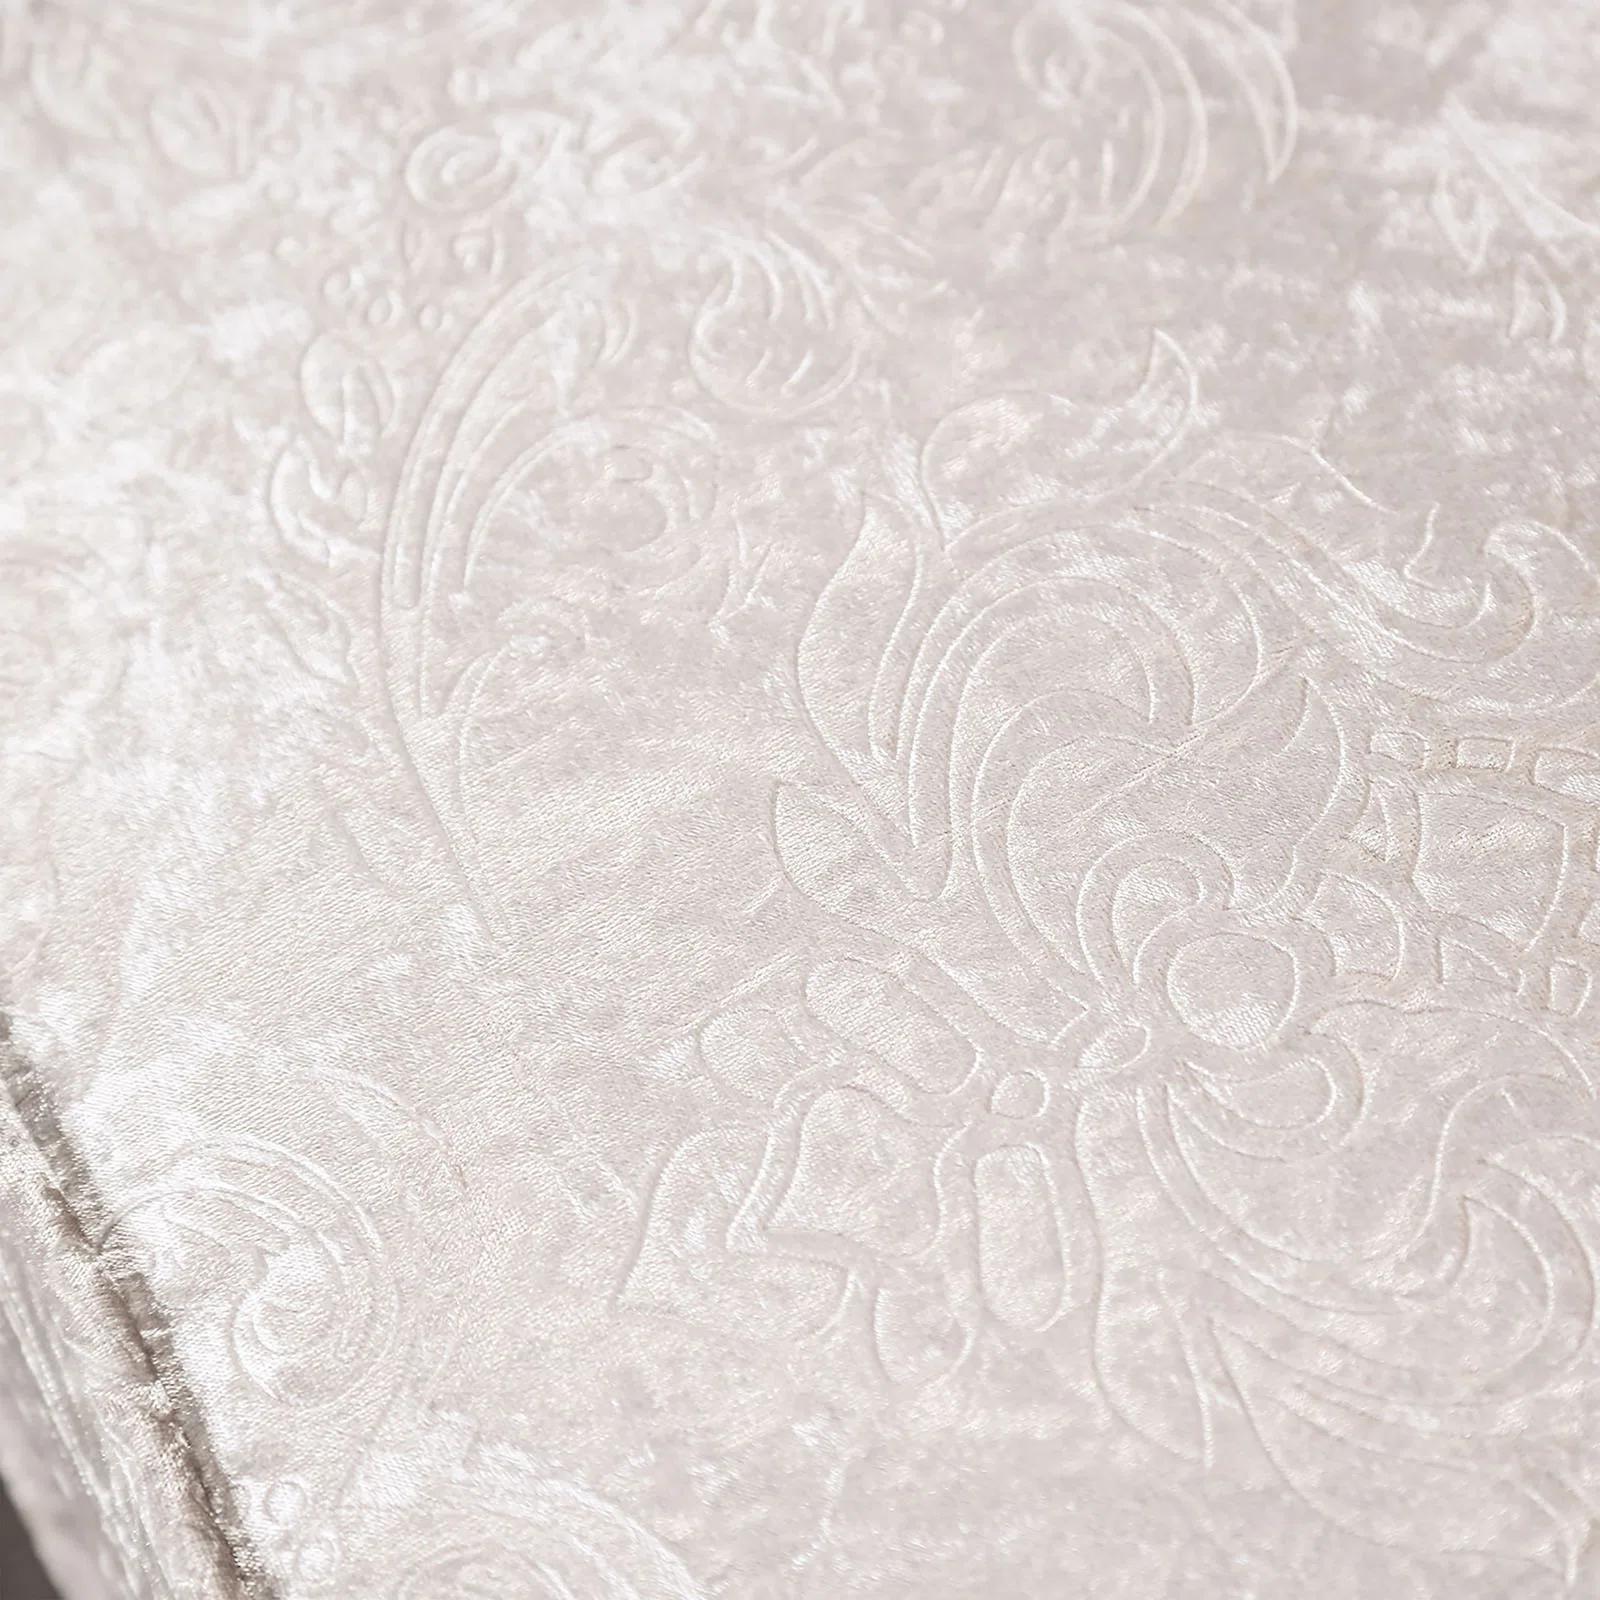 

    
Luxury Off-White Tufted Sofa Set 2Pcs ACAPULCO FM65001WH-SF FoA Traditional
